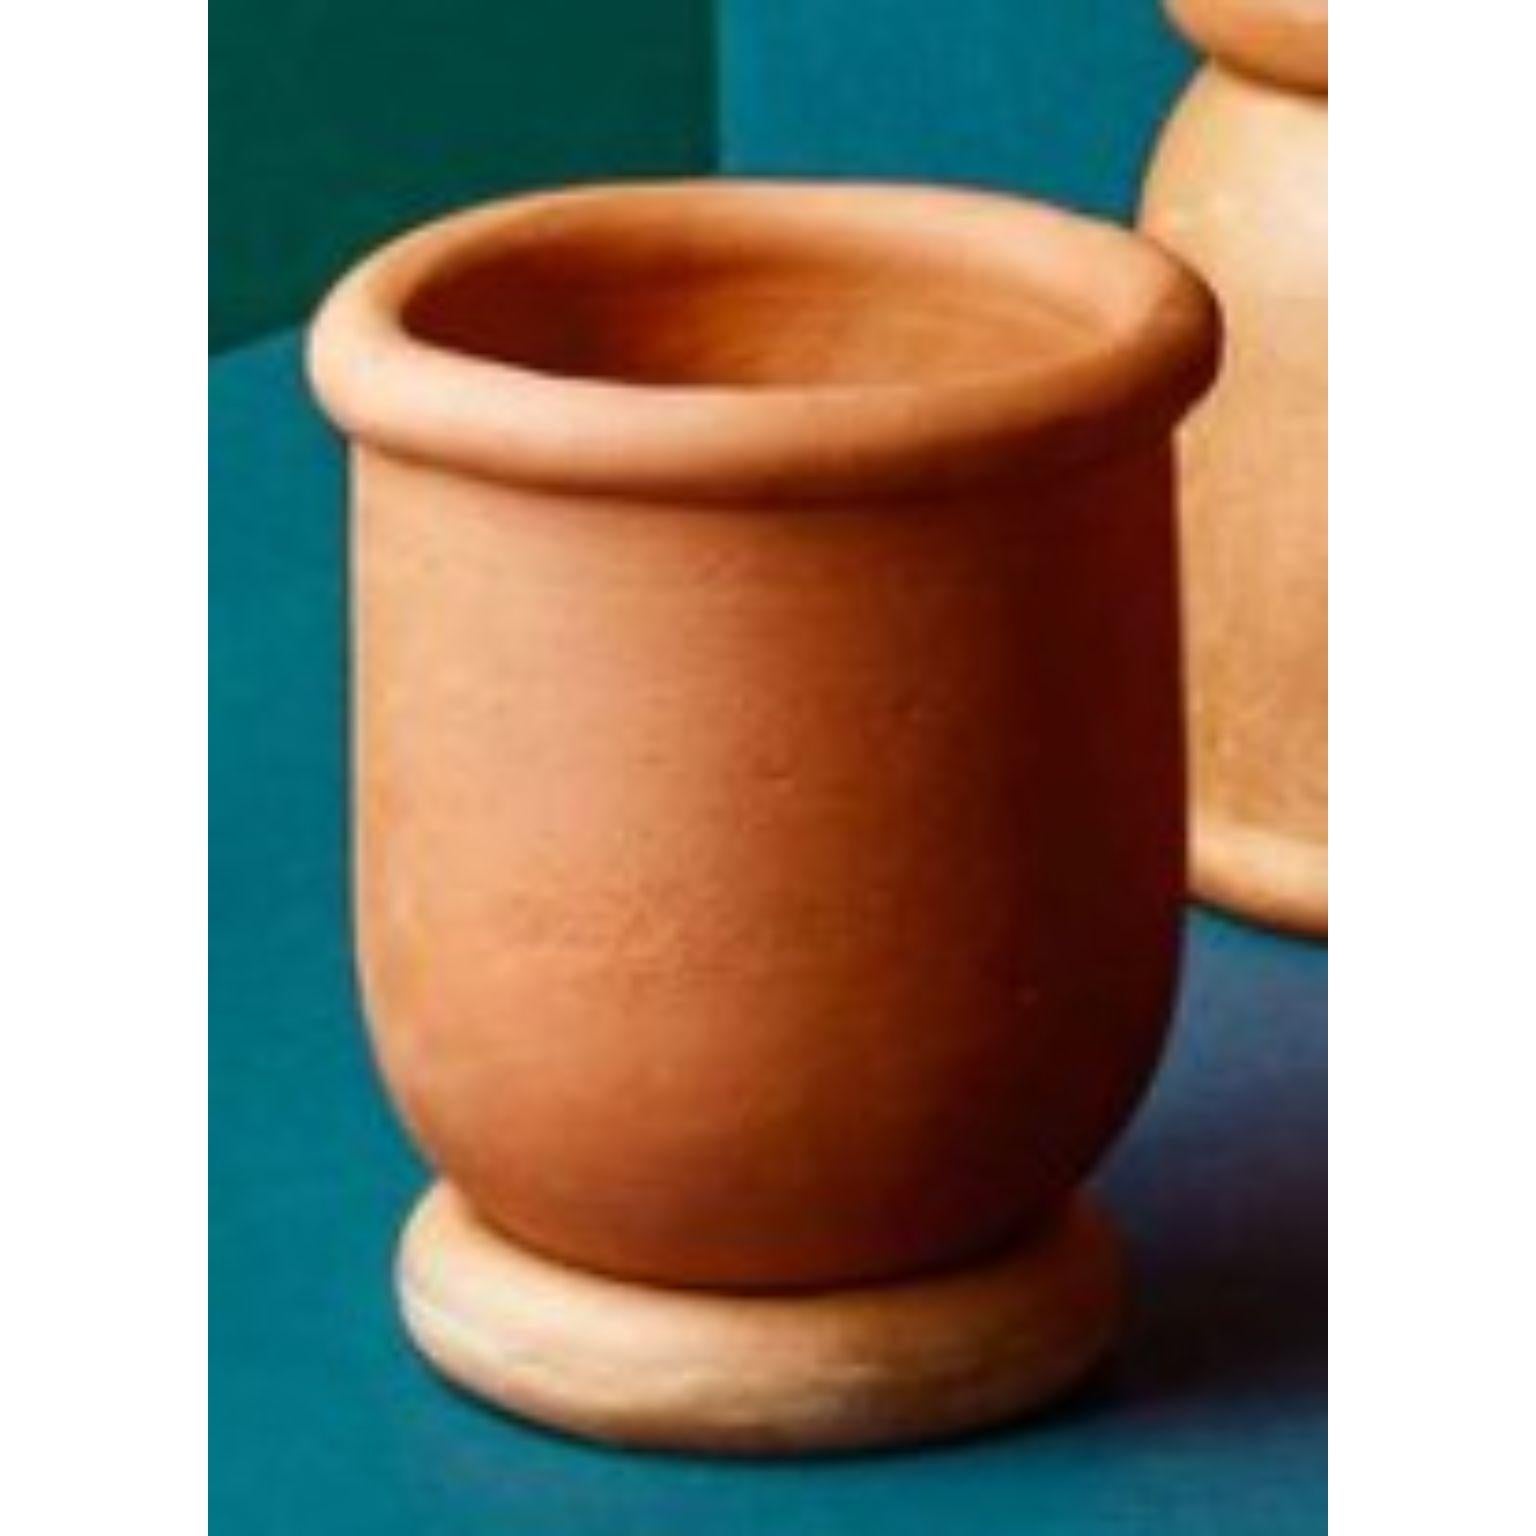 Petit vase Mix & Match de Tero Kuitunen
MATERIAL : Terre cuite fabriquée à la main.
Dimensions : D17 x H22 cm
Egalement disponible : Deux tailles différentes qui peuvent être combinées de différentes manières.

Construire à la main des jardinières